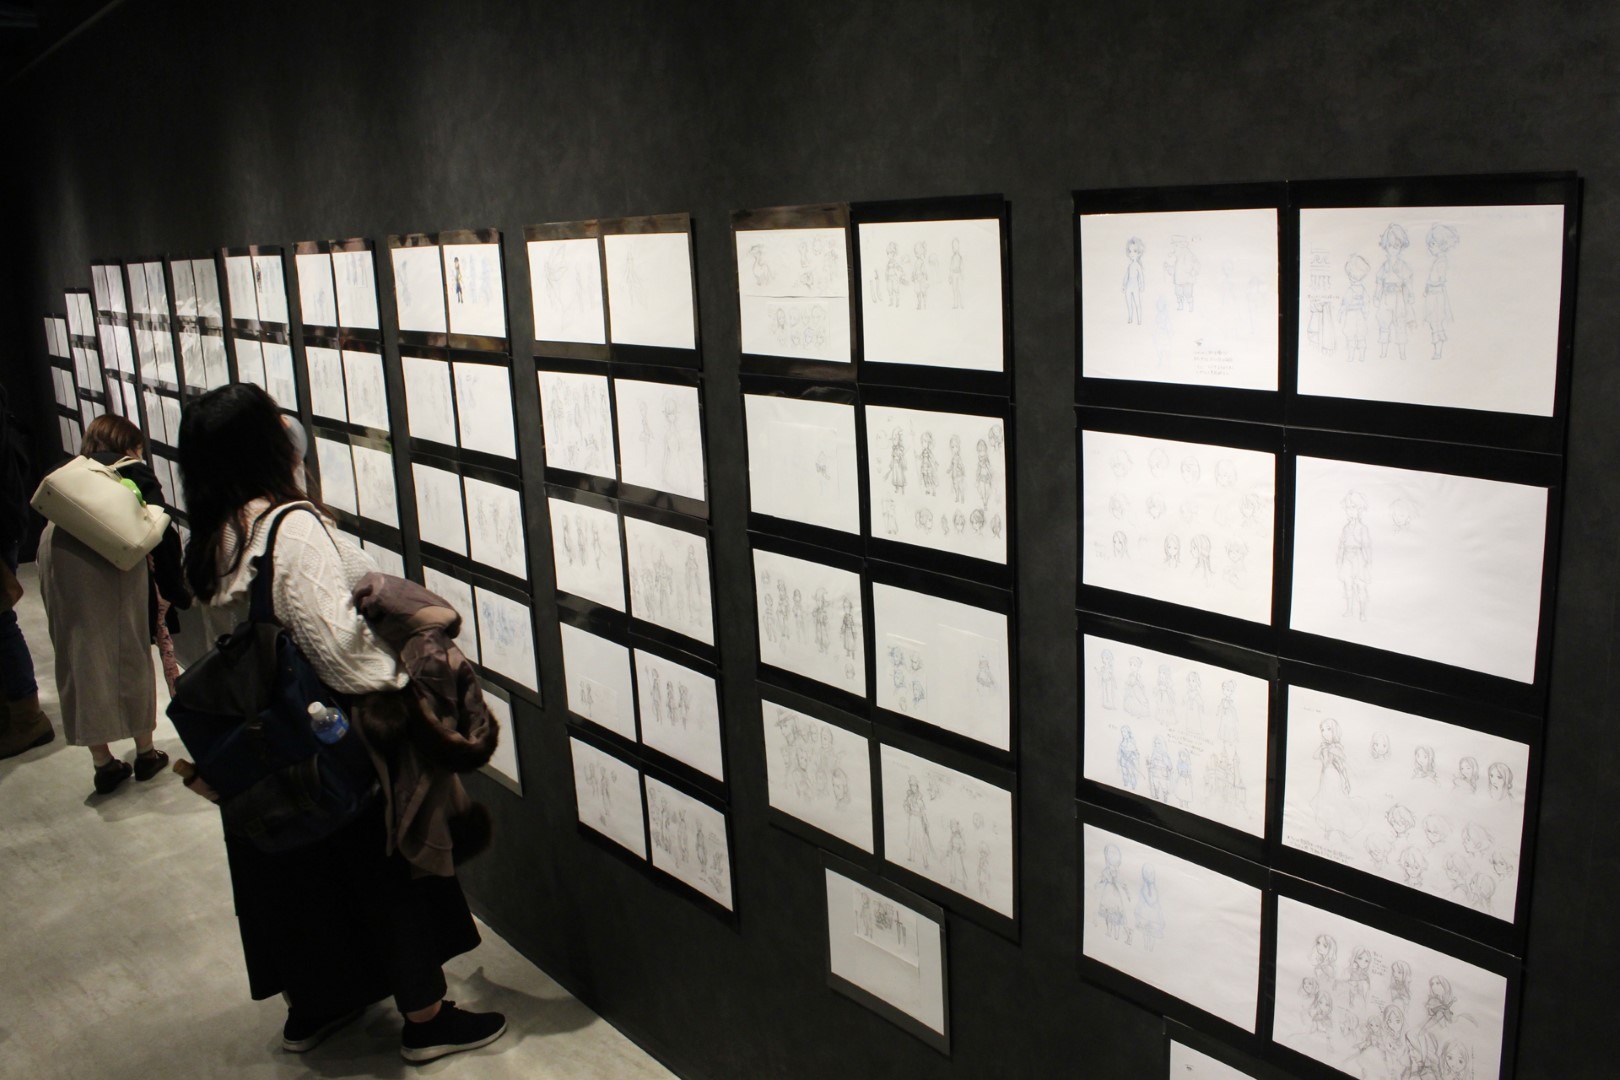 日本《Bravely Default》10 周年记念展现场报导展示超过两百张以上插图原画插图26